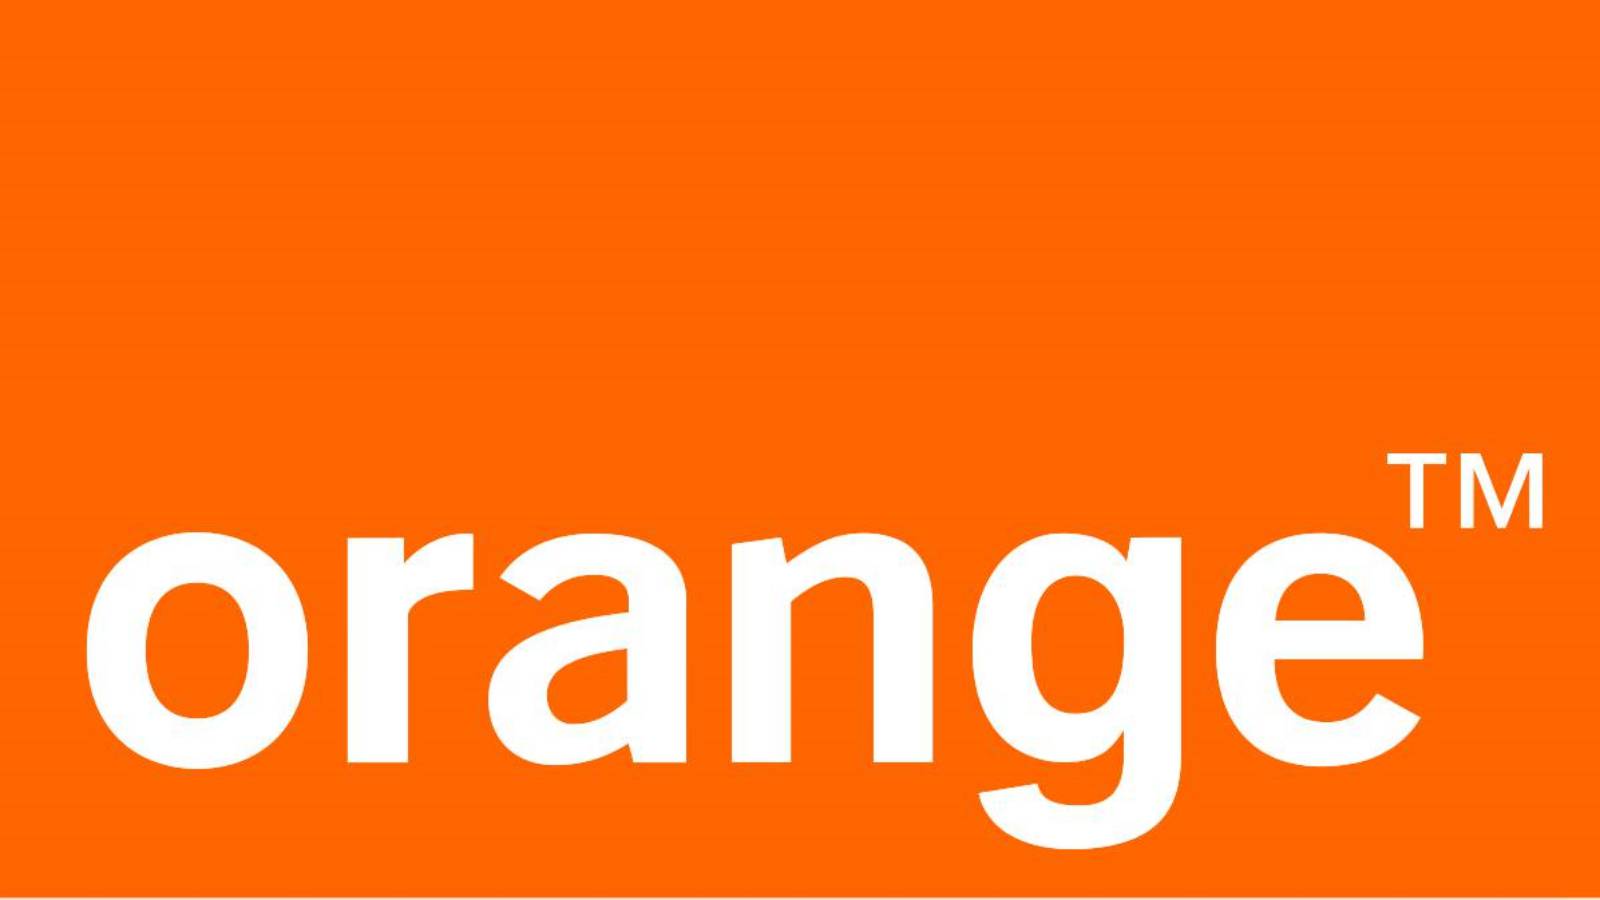 GRATIS Orange 15 Telefoane iPhone 14 Plus Clientii Romani